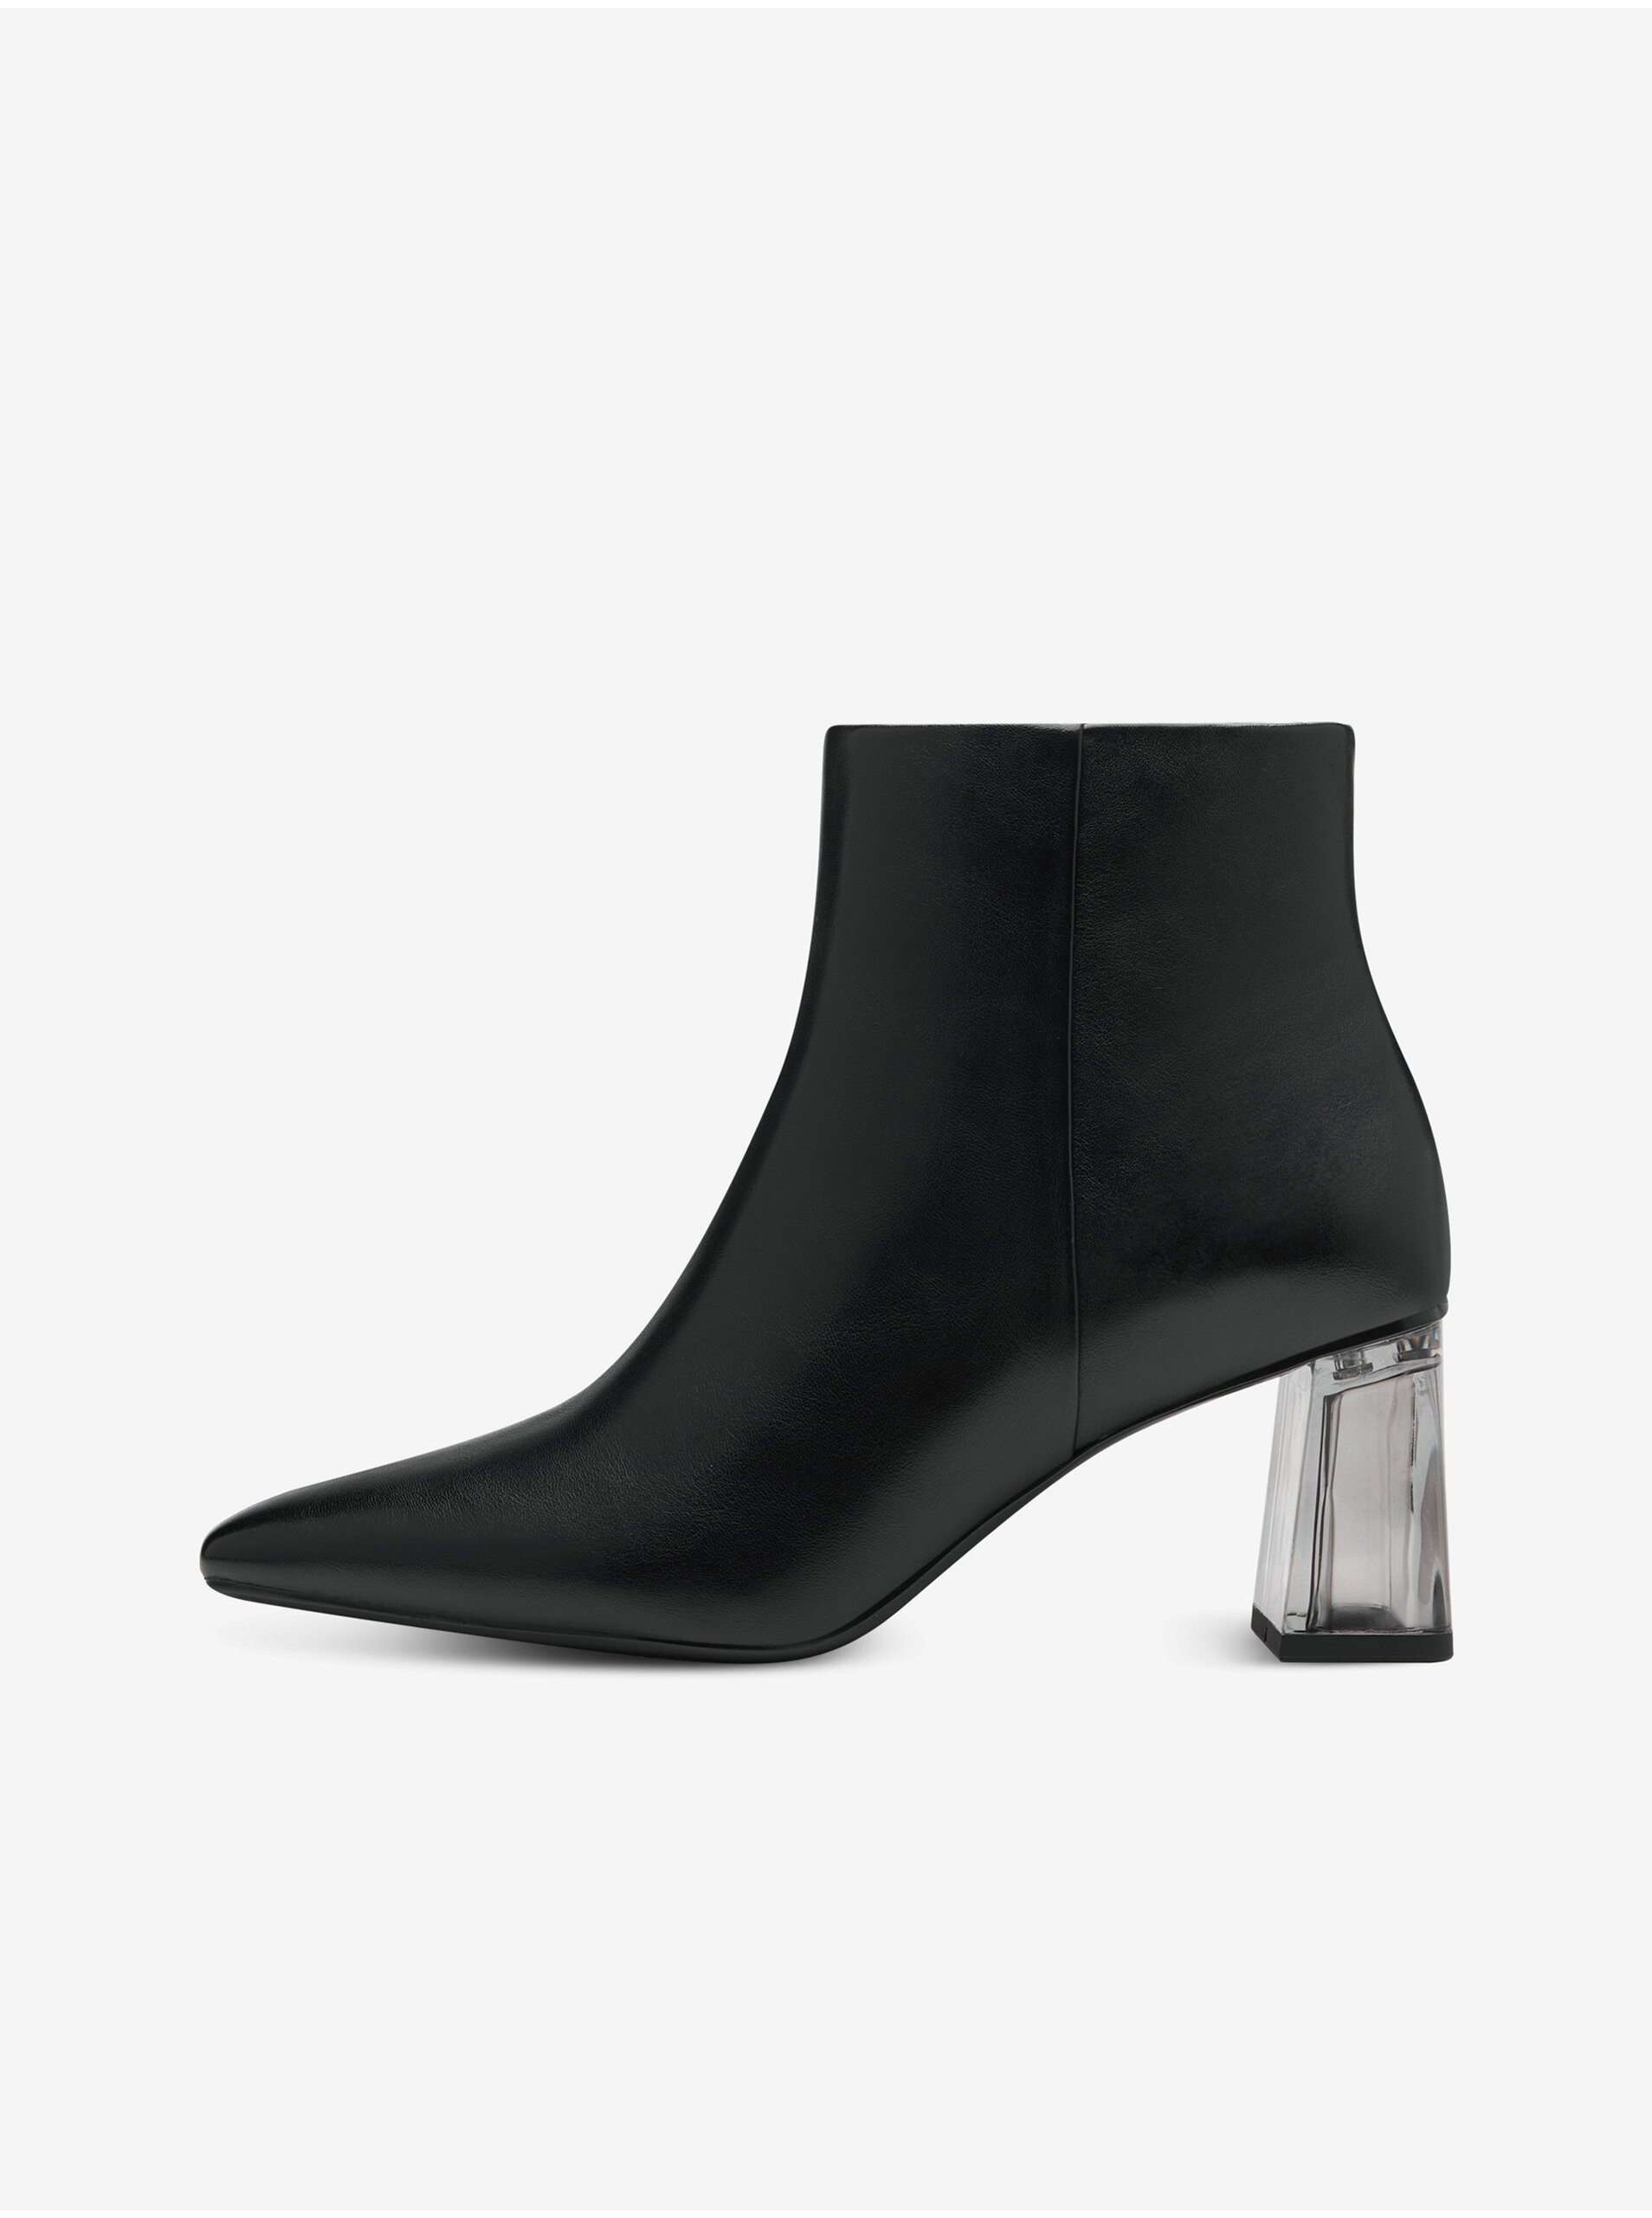 E-shop Čierne dámske členkové topánky na podpätku Tamaris